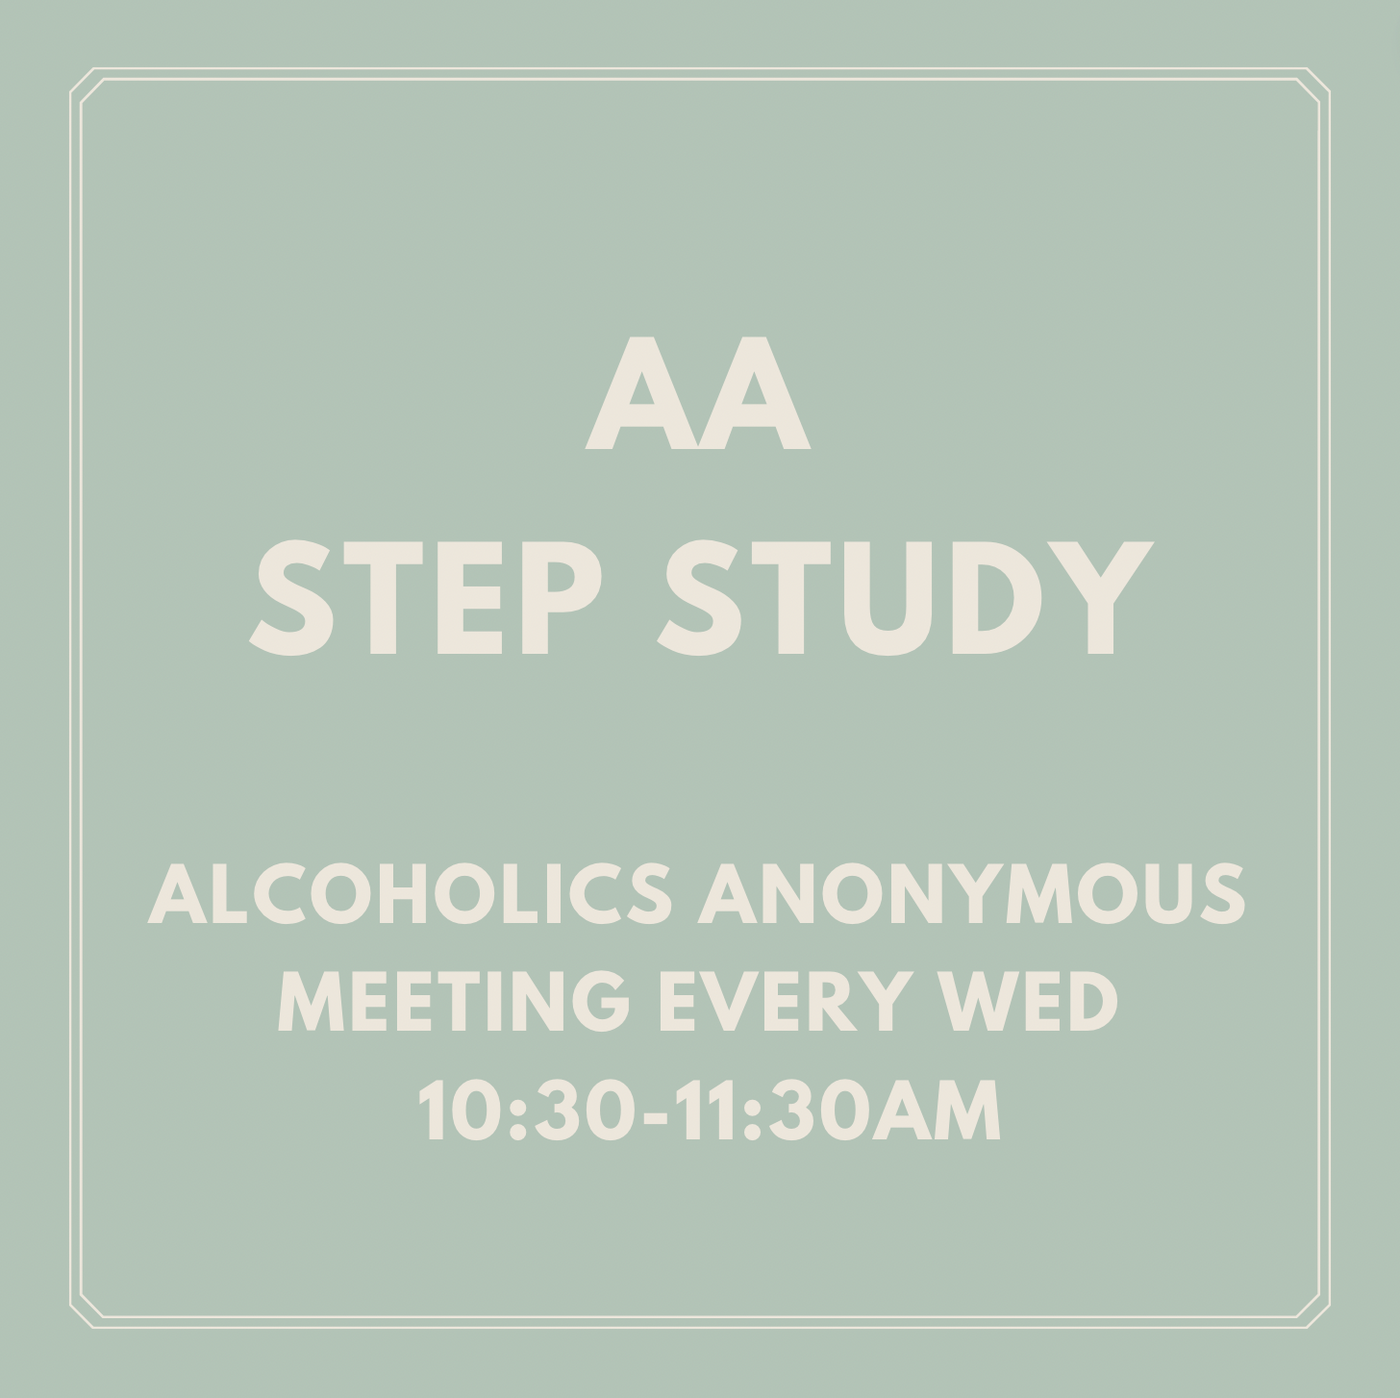 AA Step Study Meeting